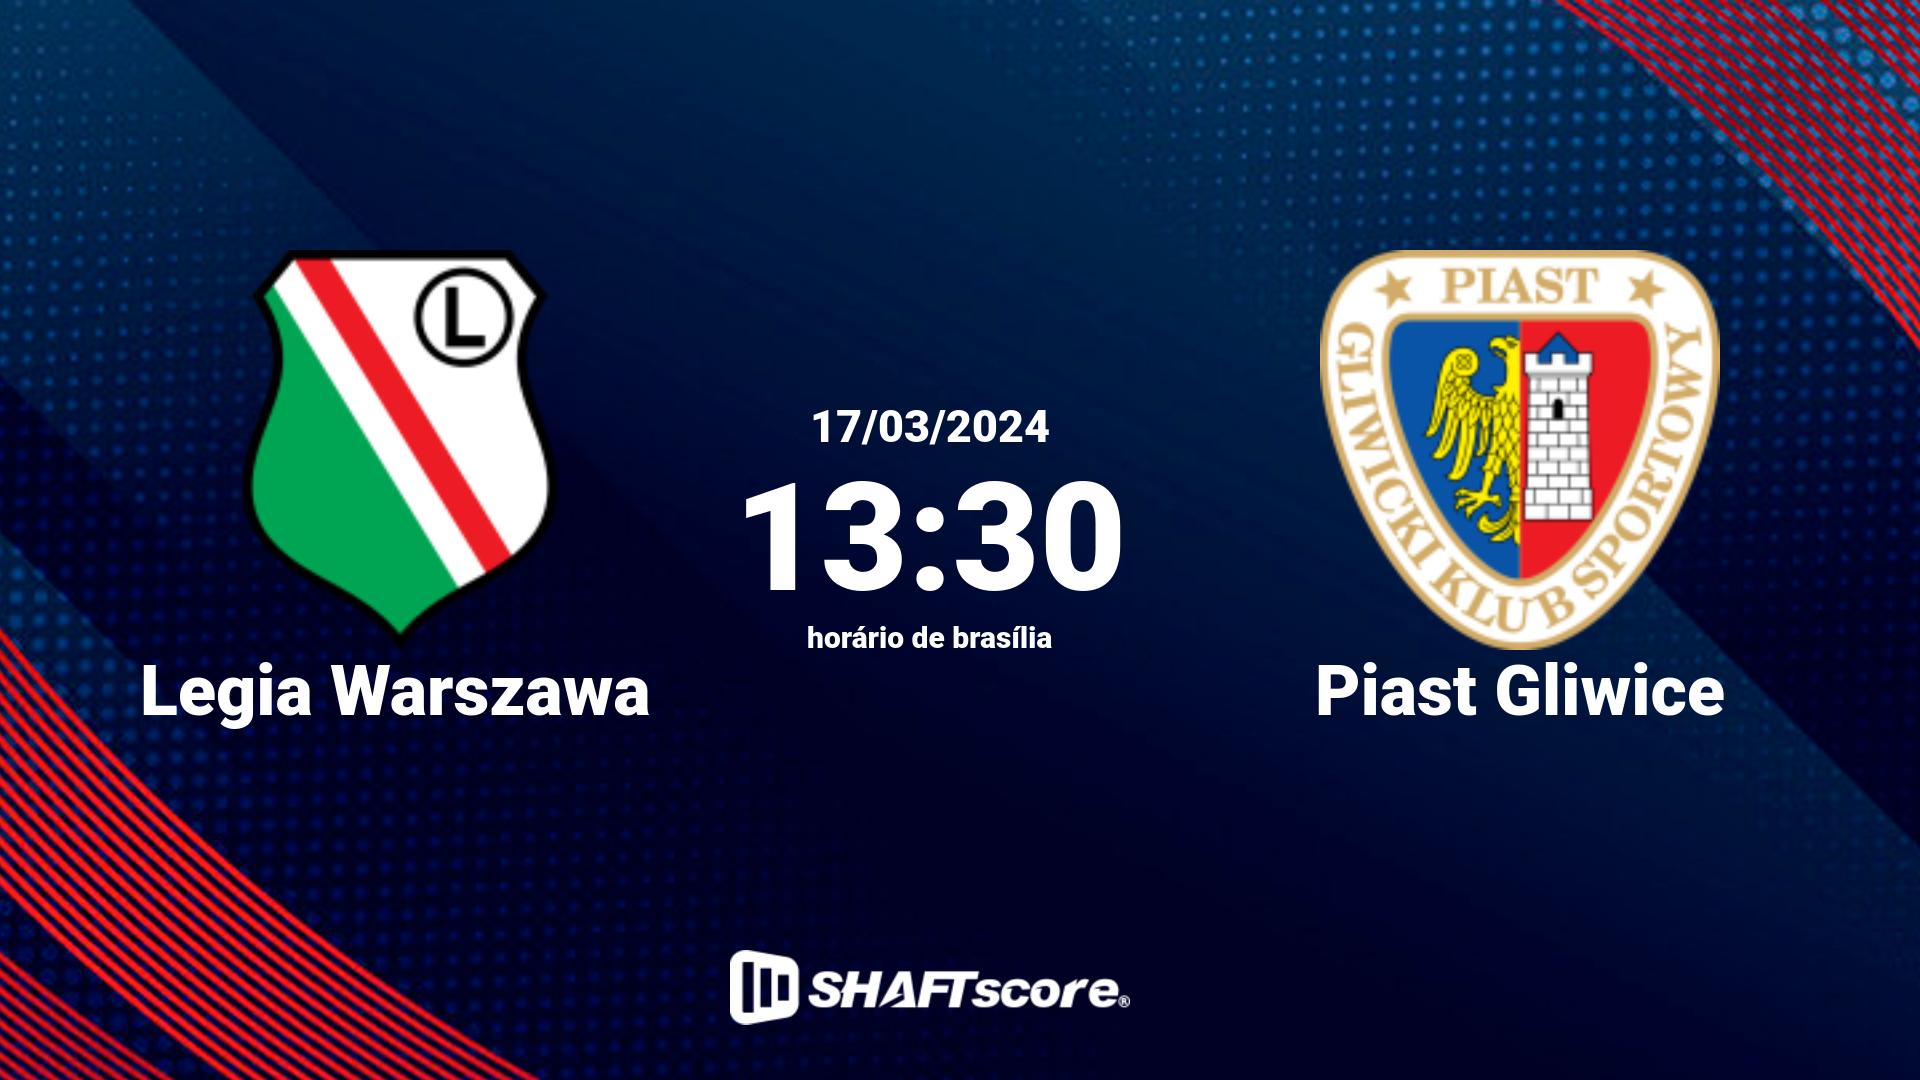 Estatísticas do jogo Legia Warszawa vs Piast Gliwice 17.03 13:30